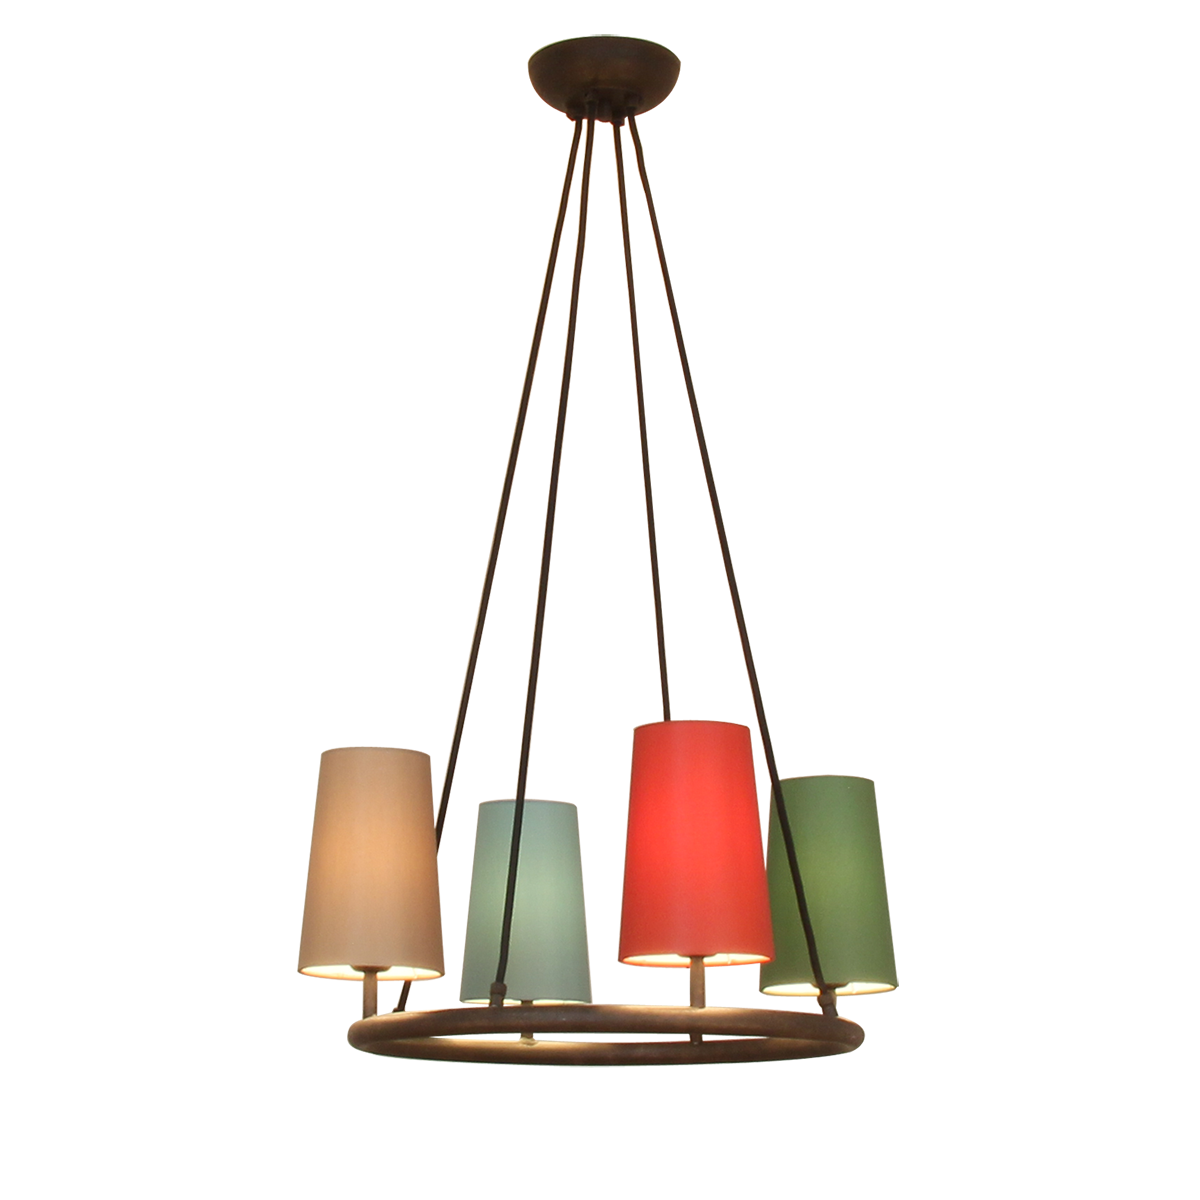 Flair Ringkrone D= 50cm mit Lampenschirmen in Chintz Farbe nach Wahl